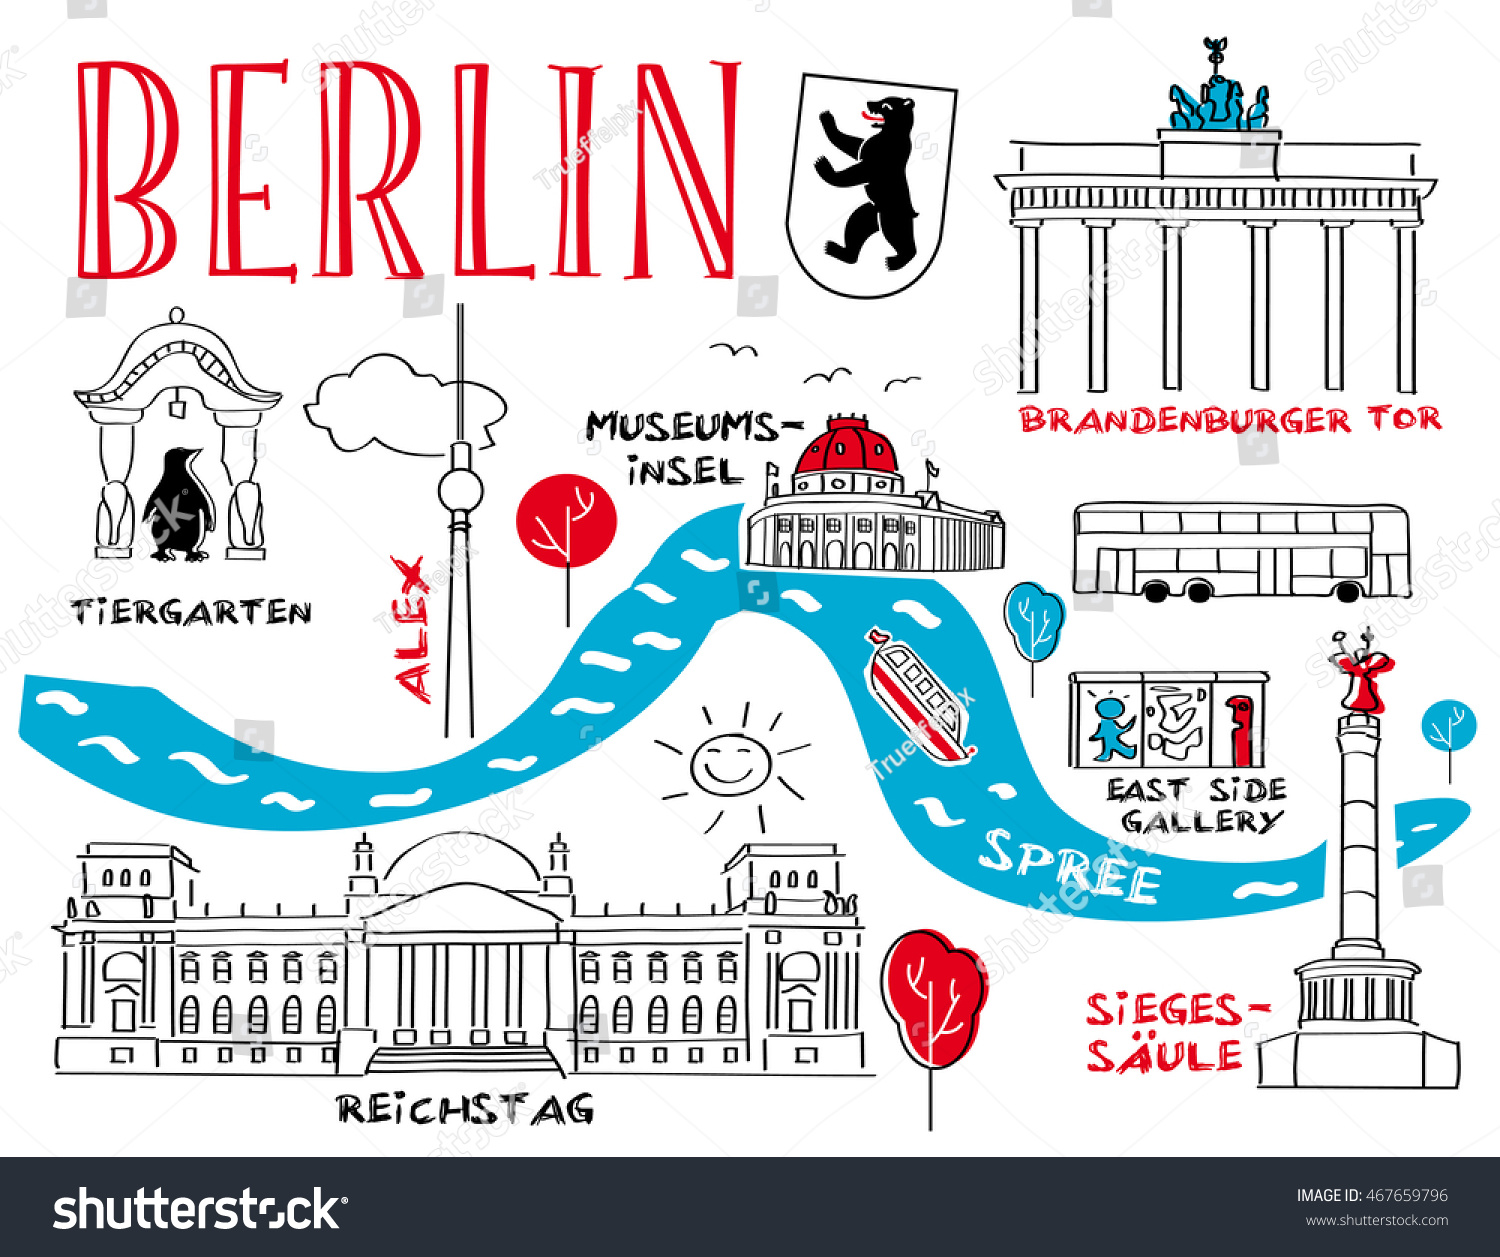 Достопримечательности Берлина рисунок